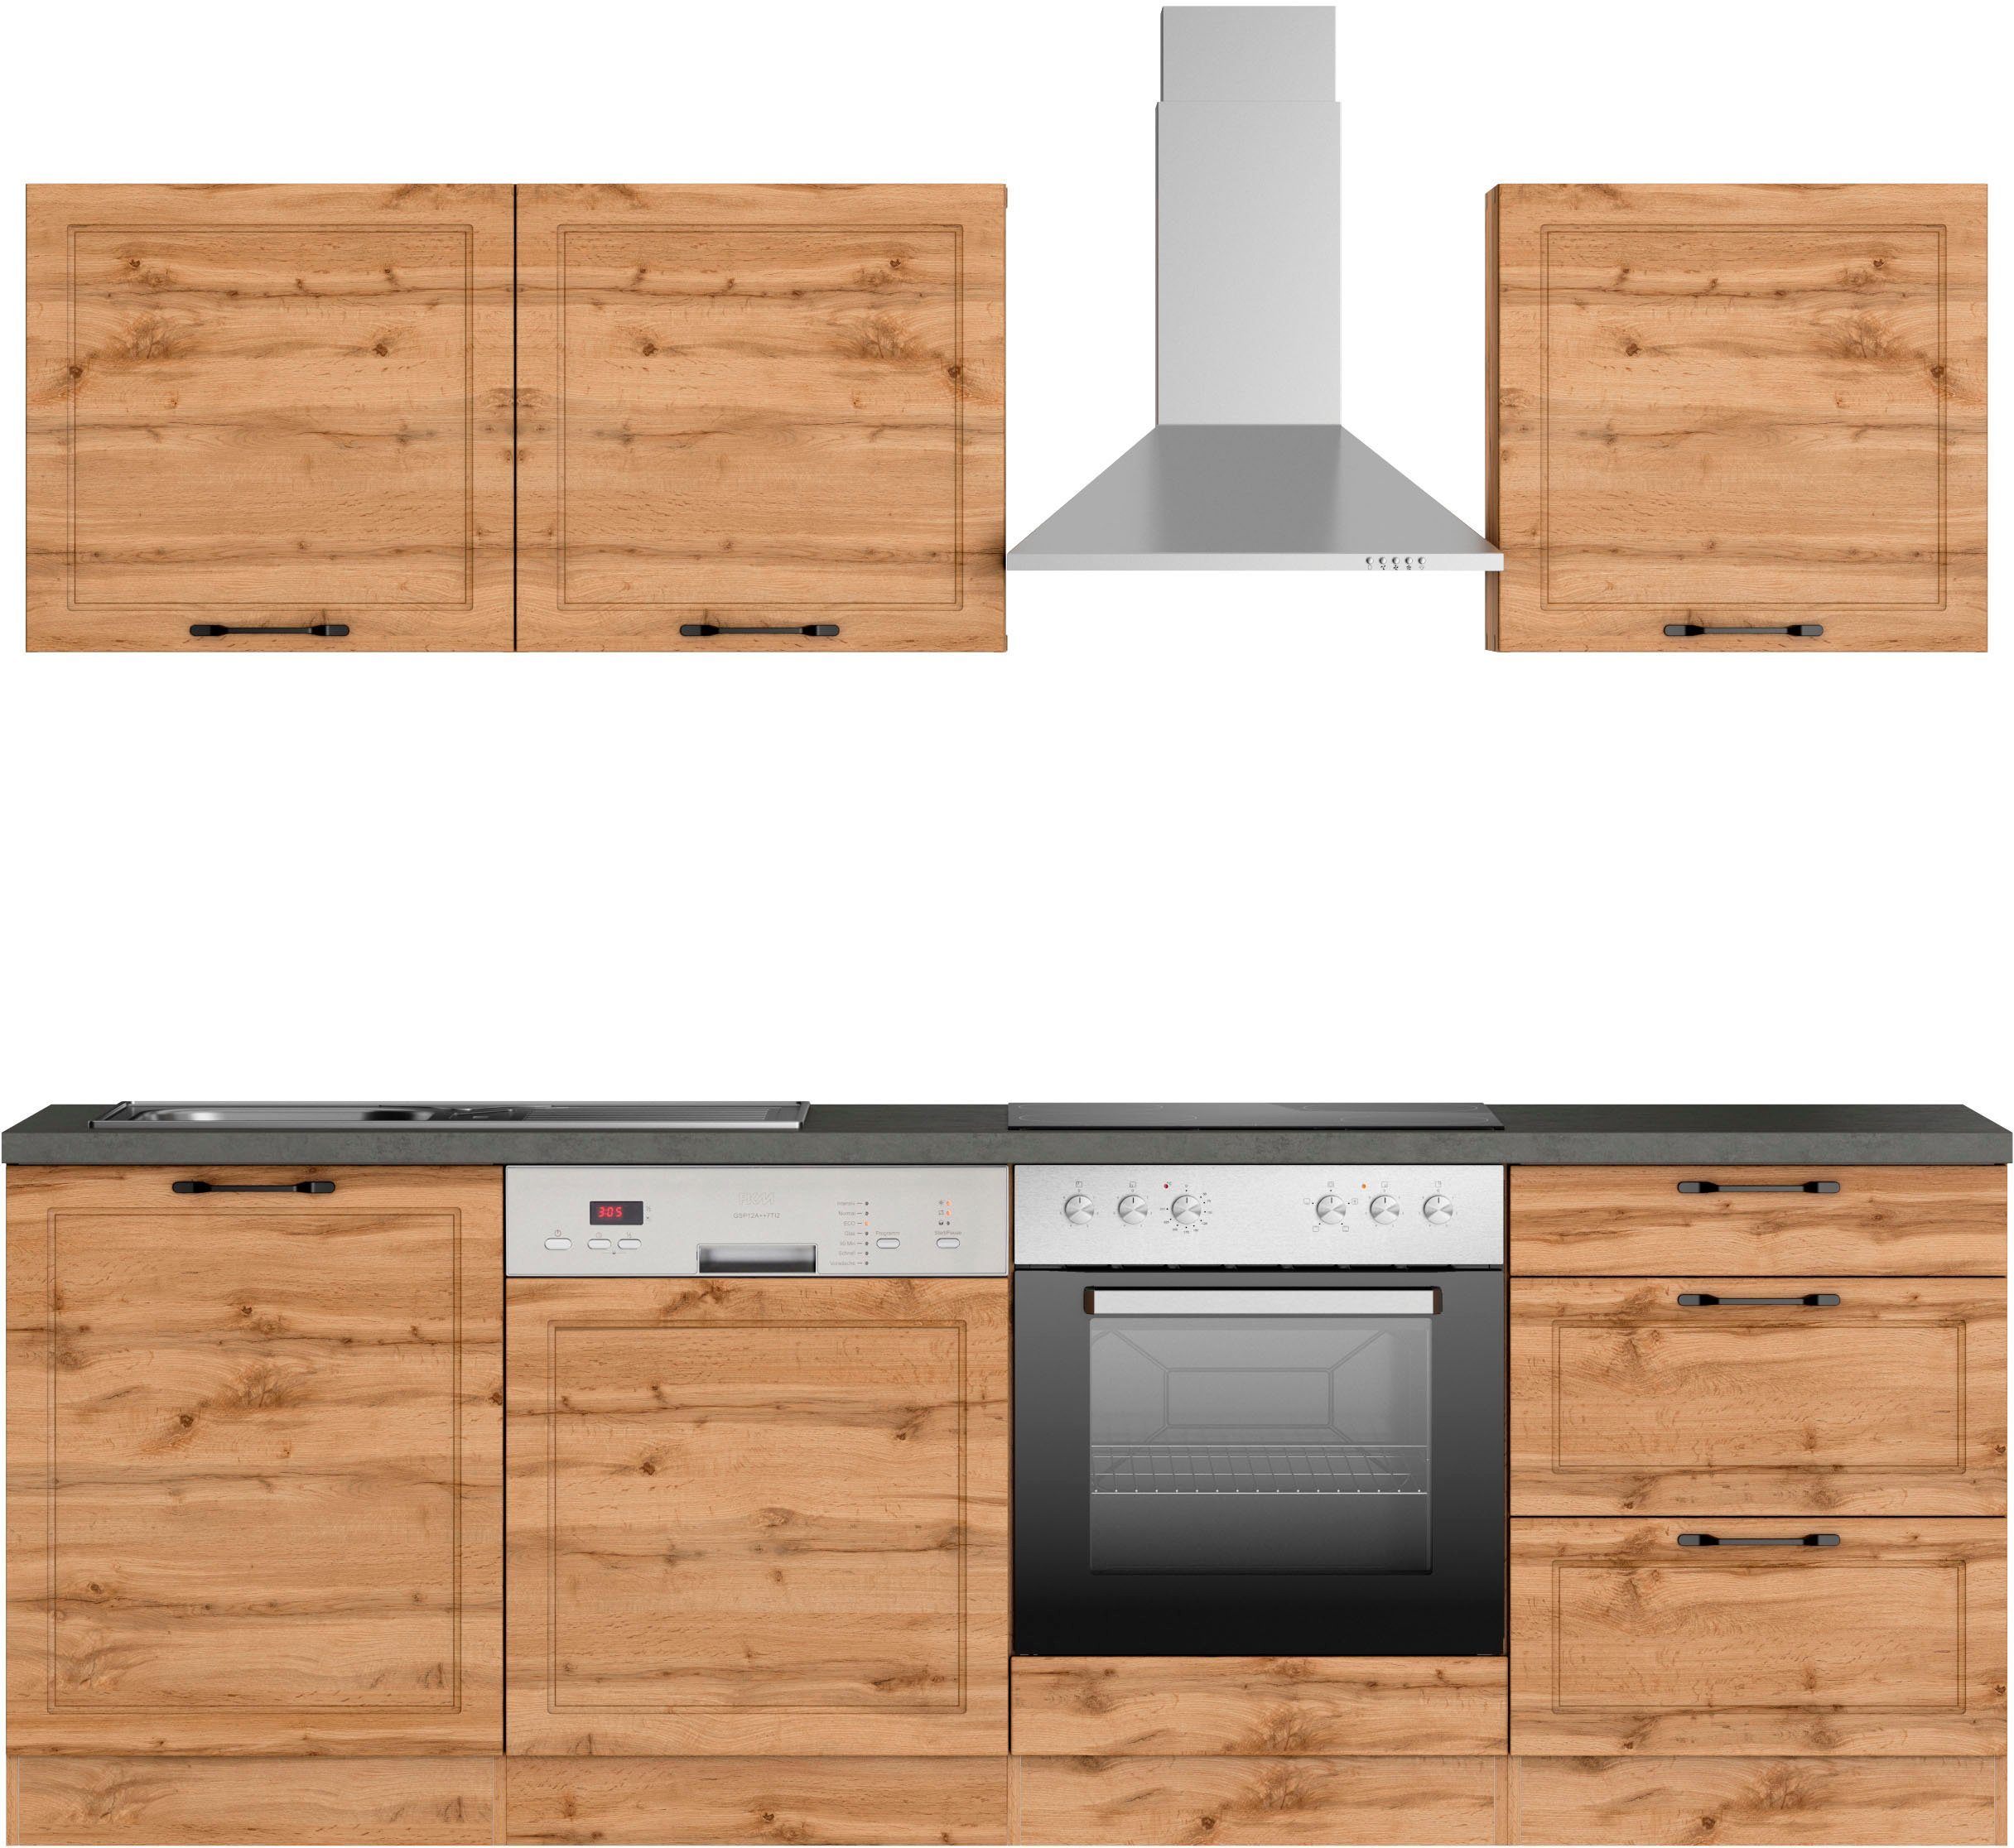 HELD MÖBEL Küchenzeile Lani, mit MDF-Fronten, Breite 240 cm, wahlweise mit E -Geräten, Höhen-Ausgleichsfüße 0-4 cm, Wahlweise mit oder ohne E-Geräte